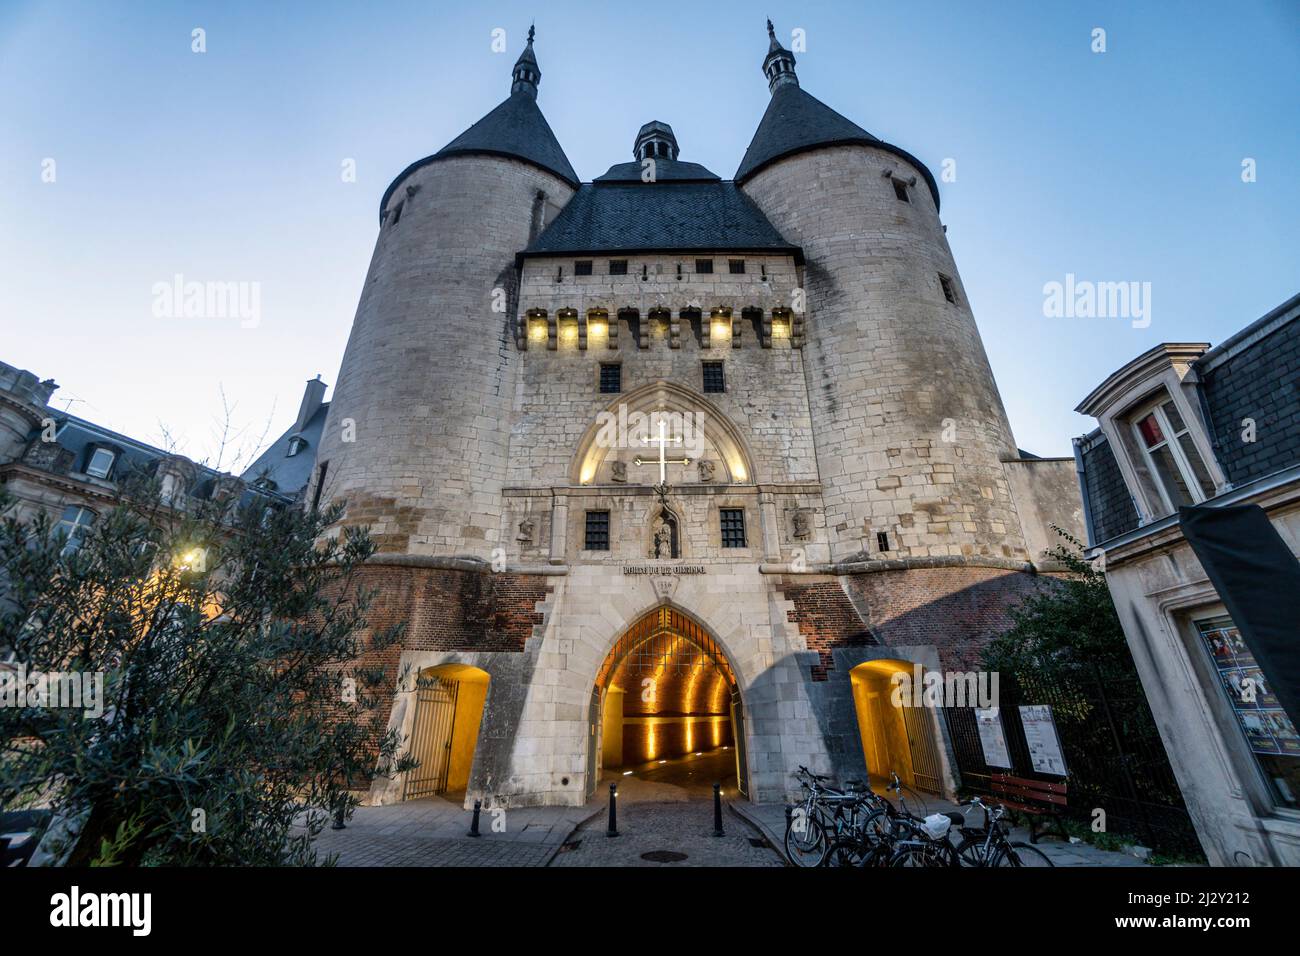 Porte de la Craffe, porte gothique de la ville, Nancy, France Banque D'Images